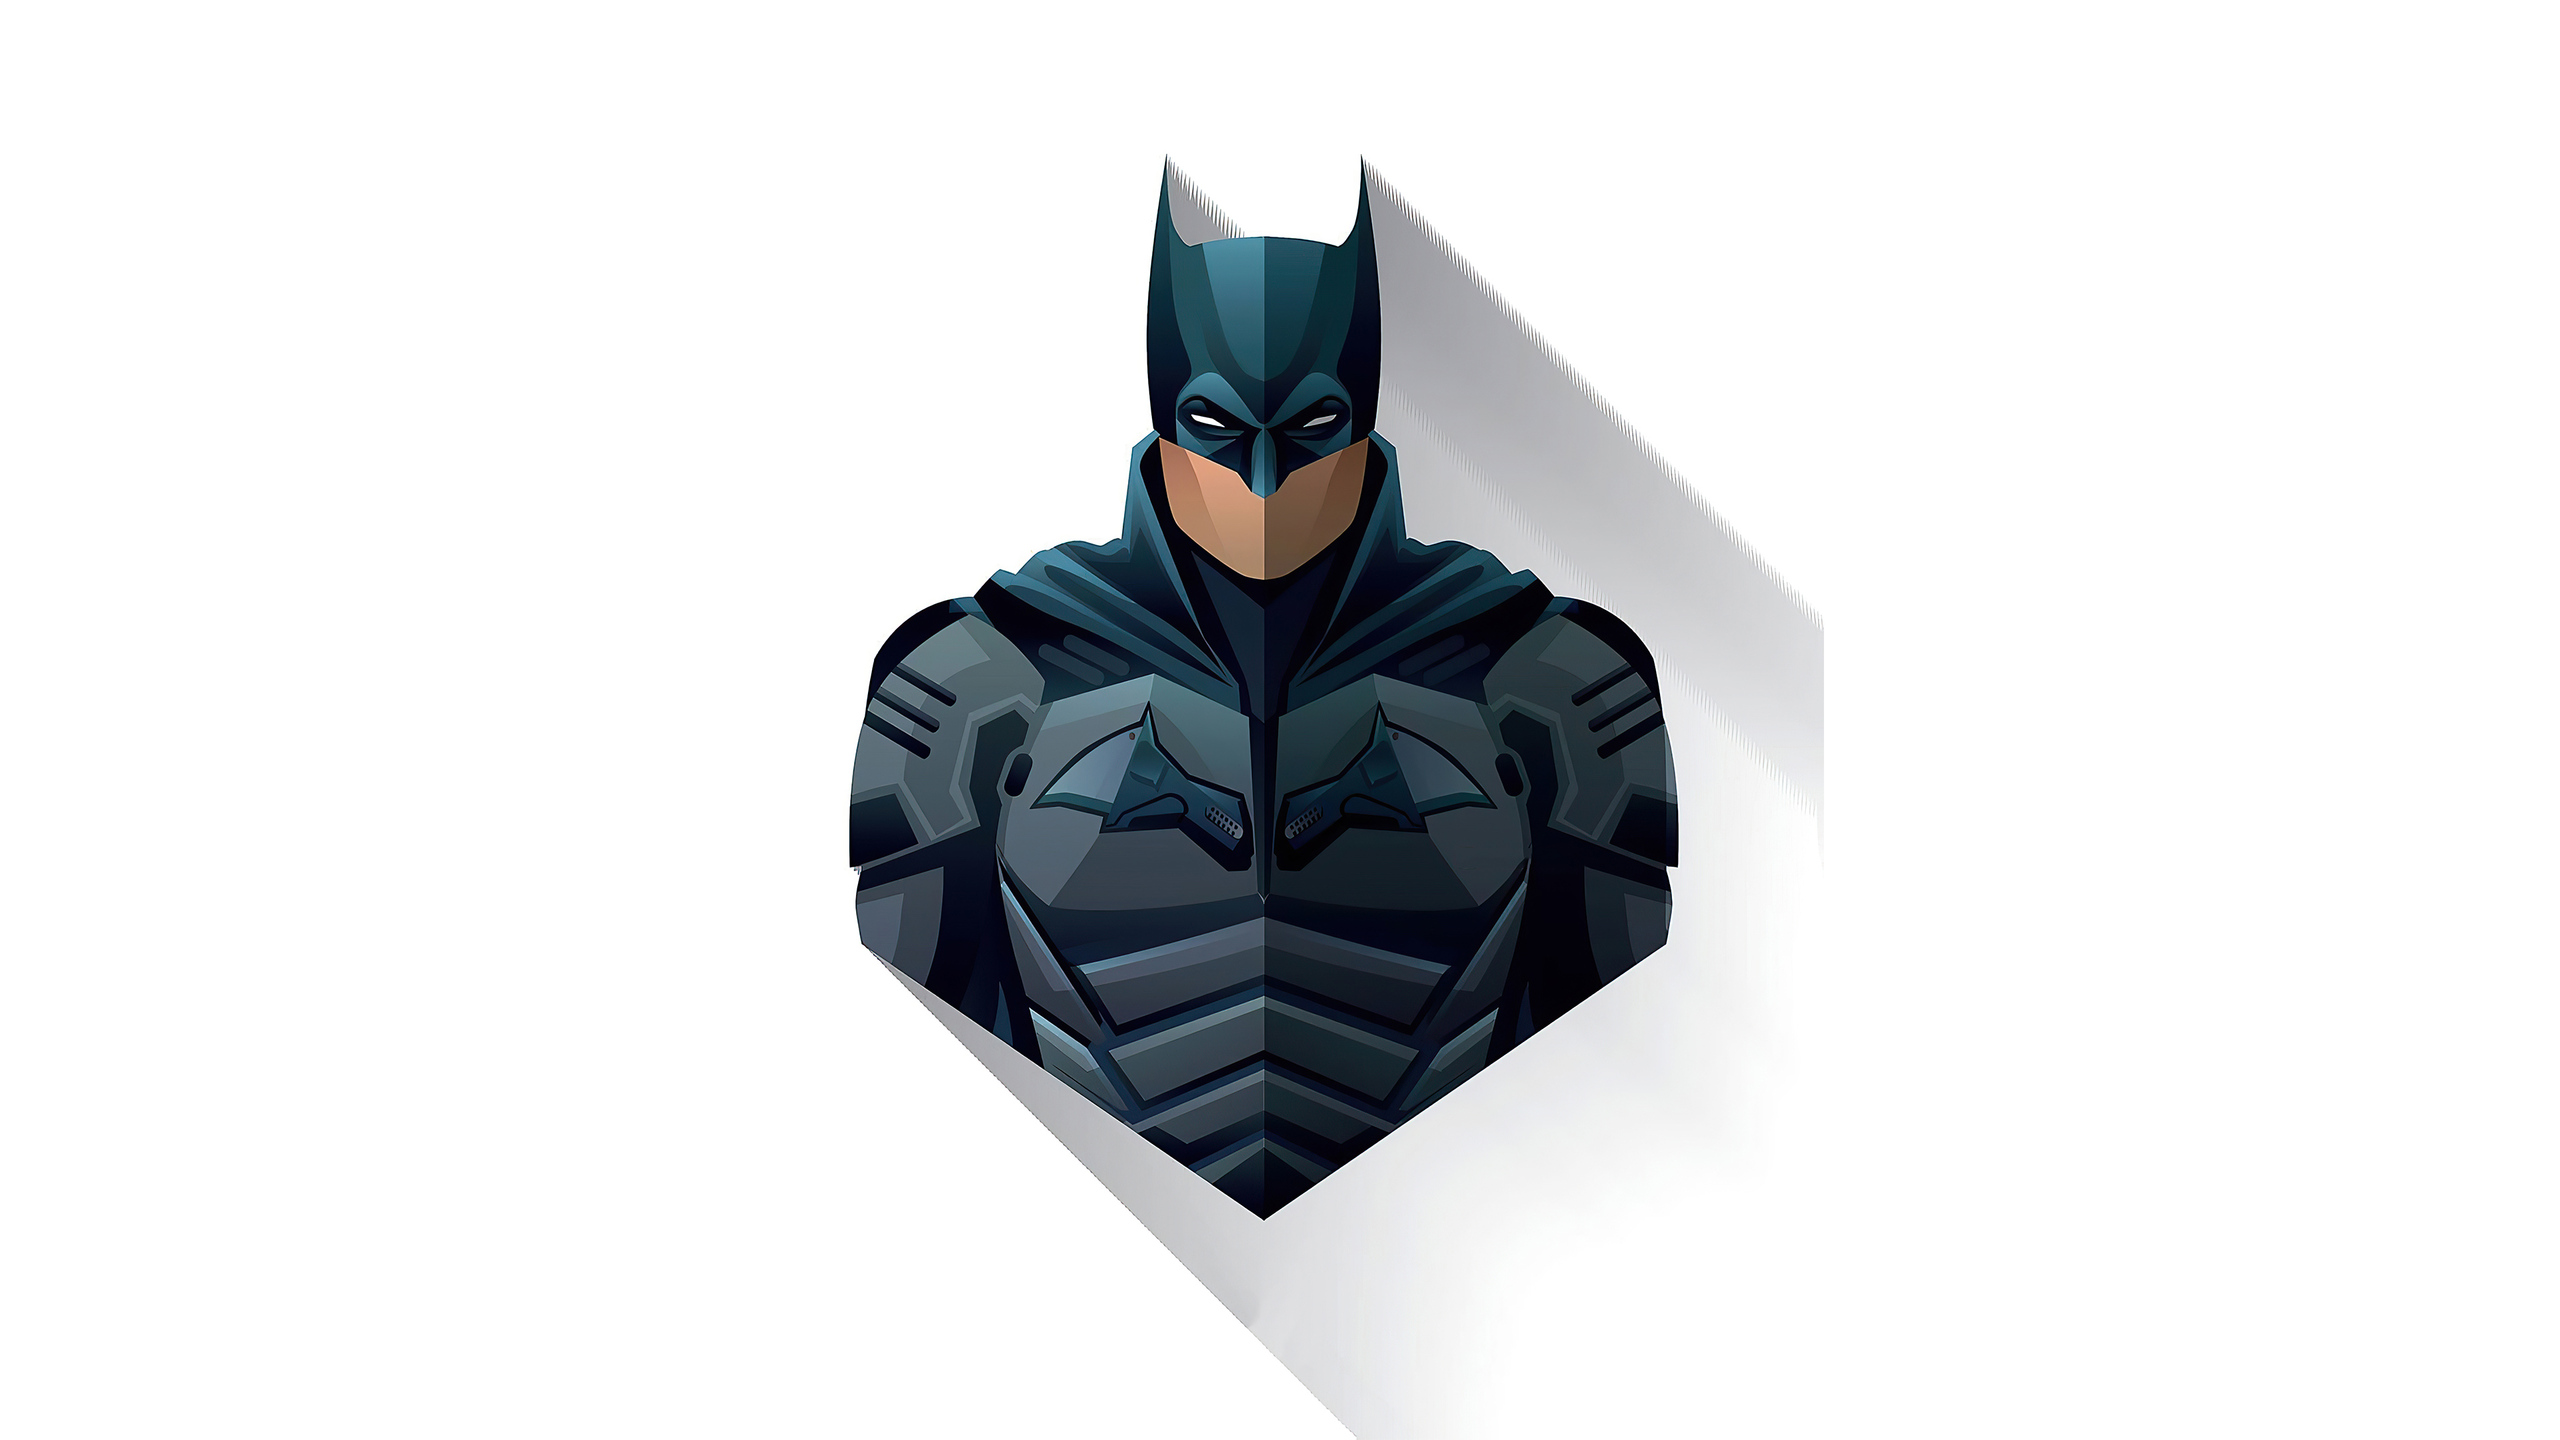 The Batman 2021 4K Minimalism Wallpapers